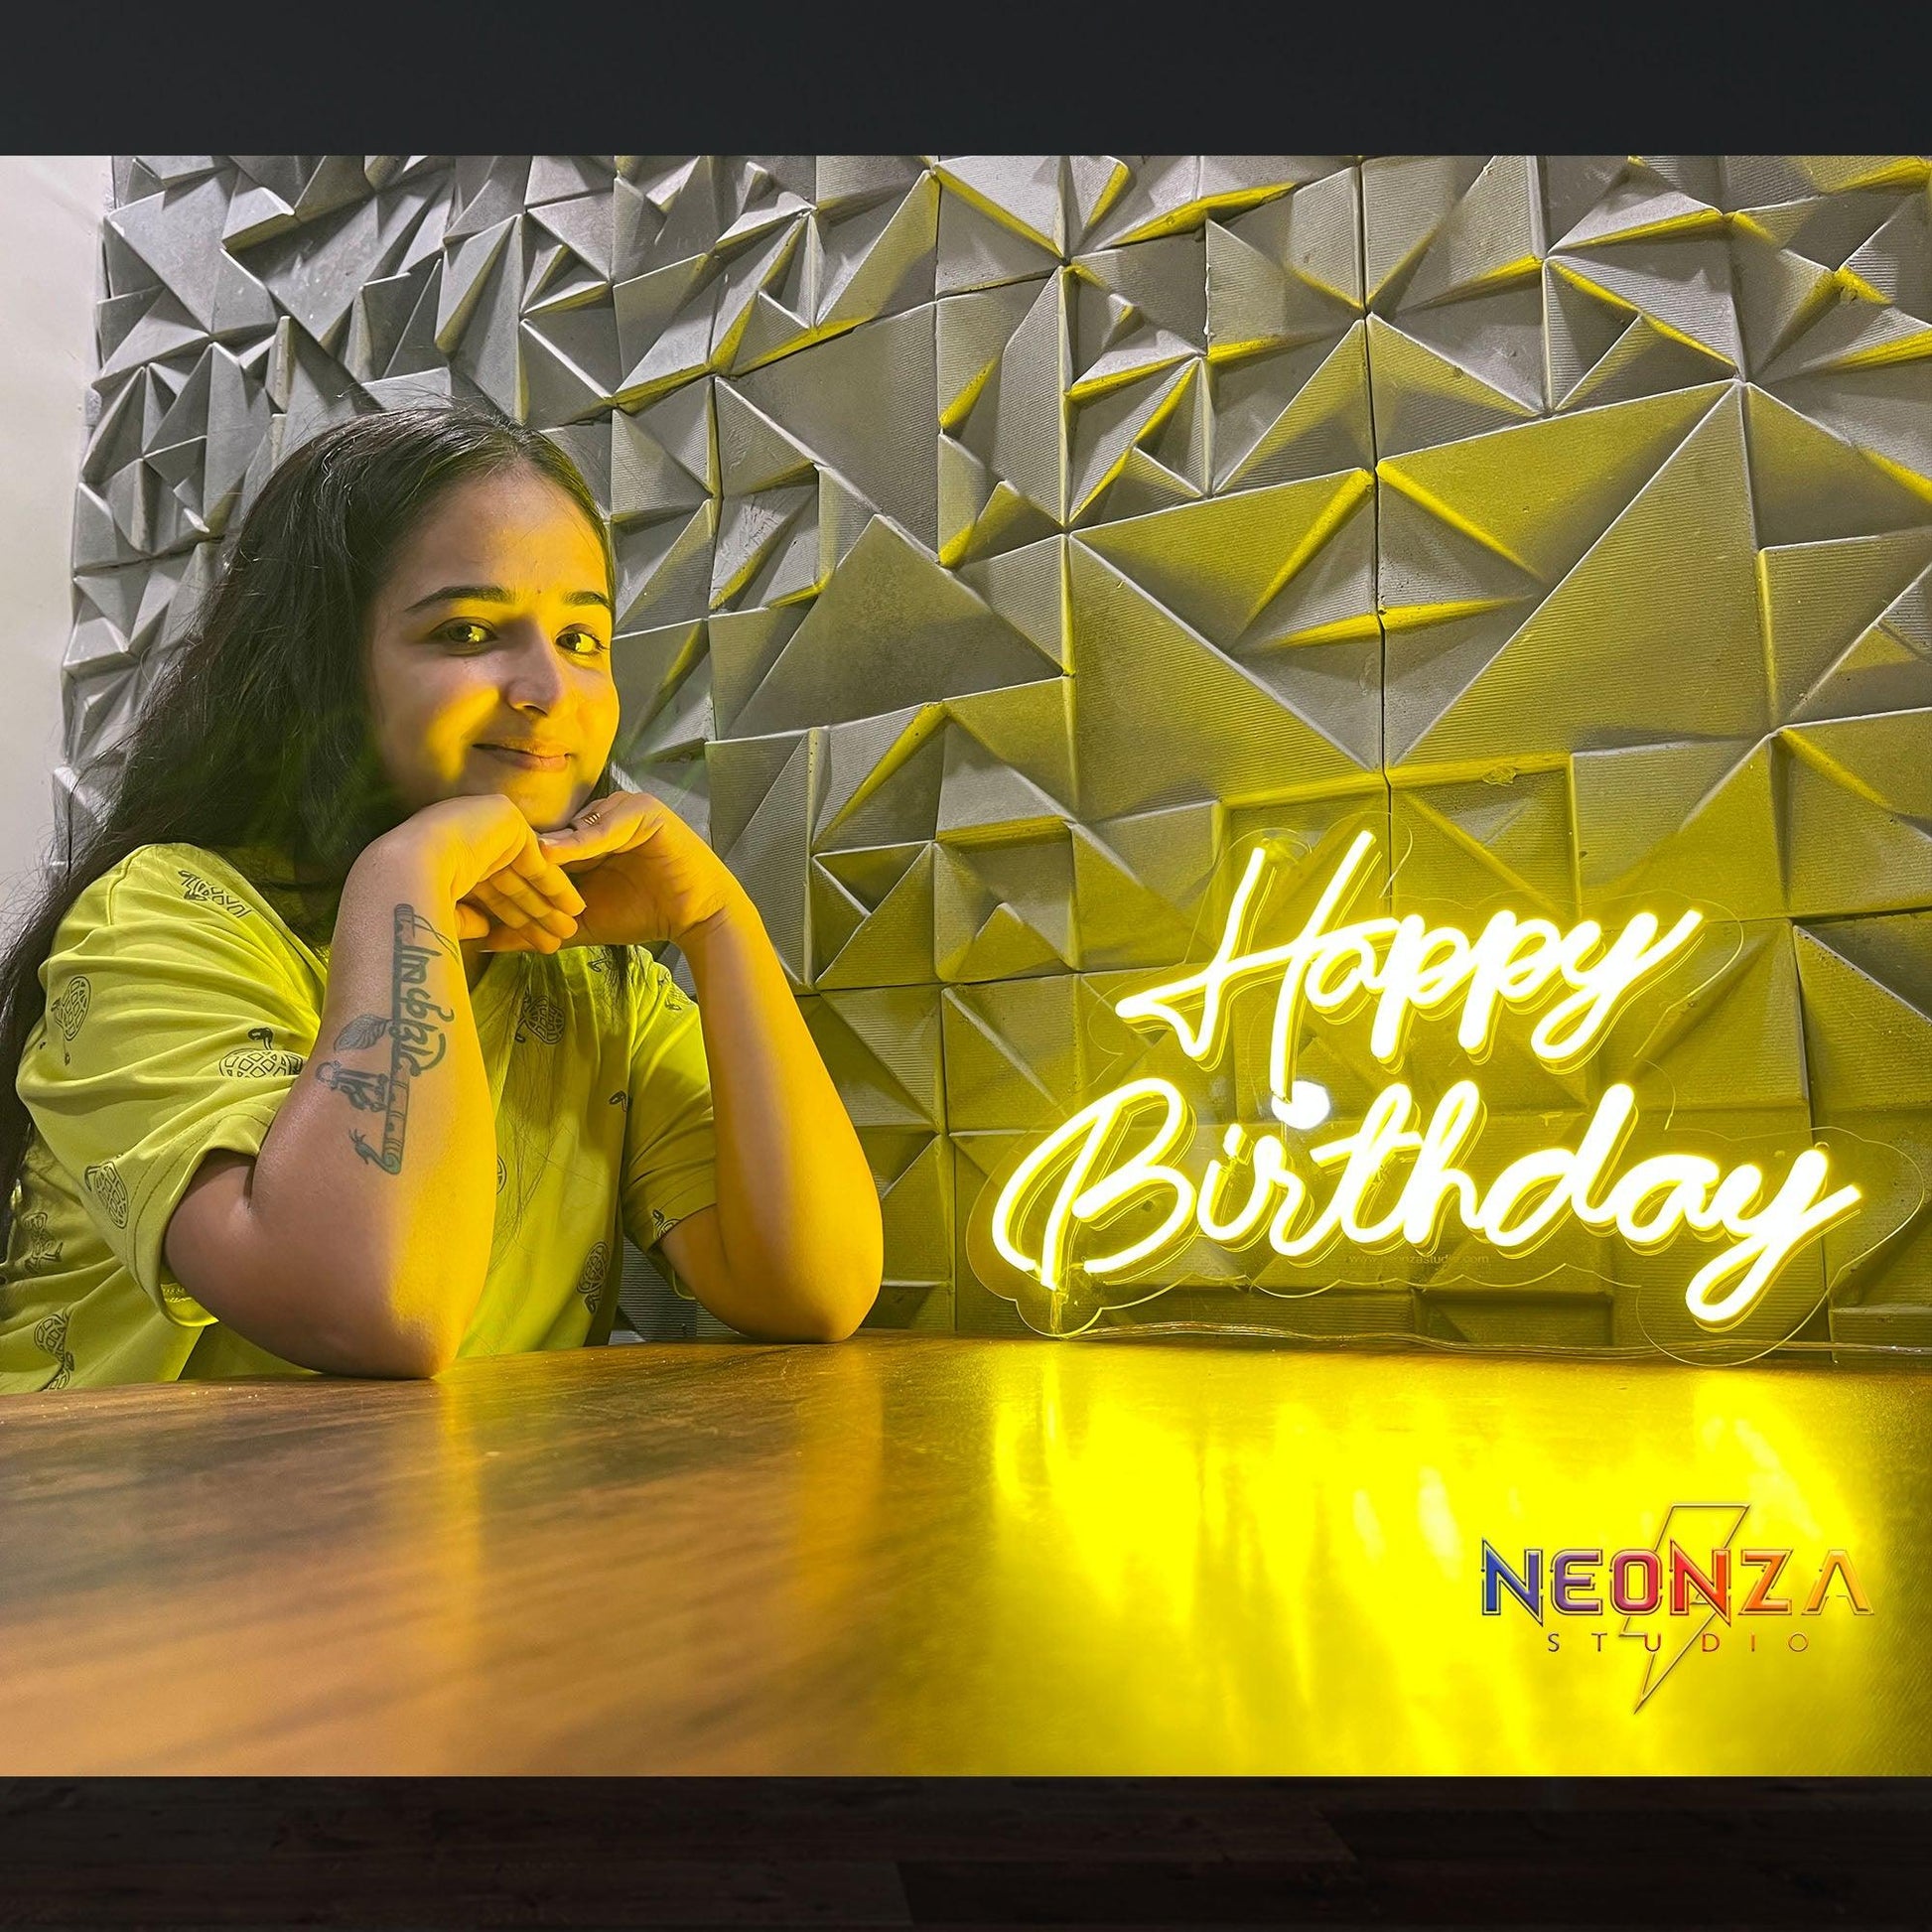 Happy Birthday Neon Sign - Neonzastudio